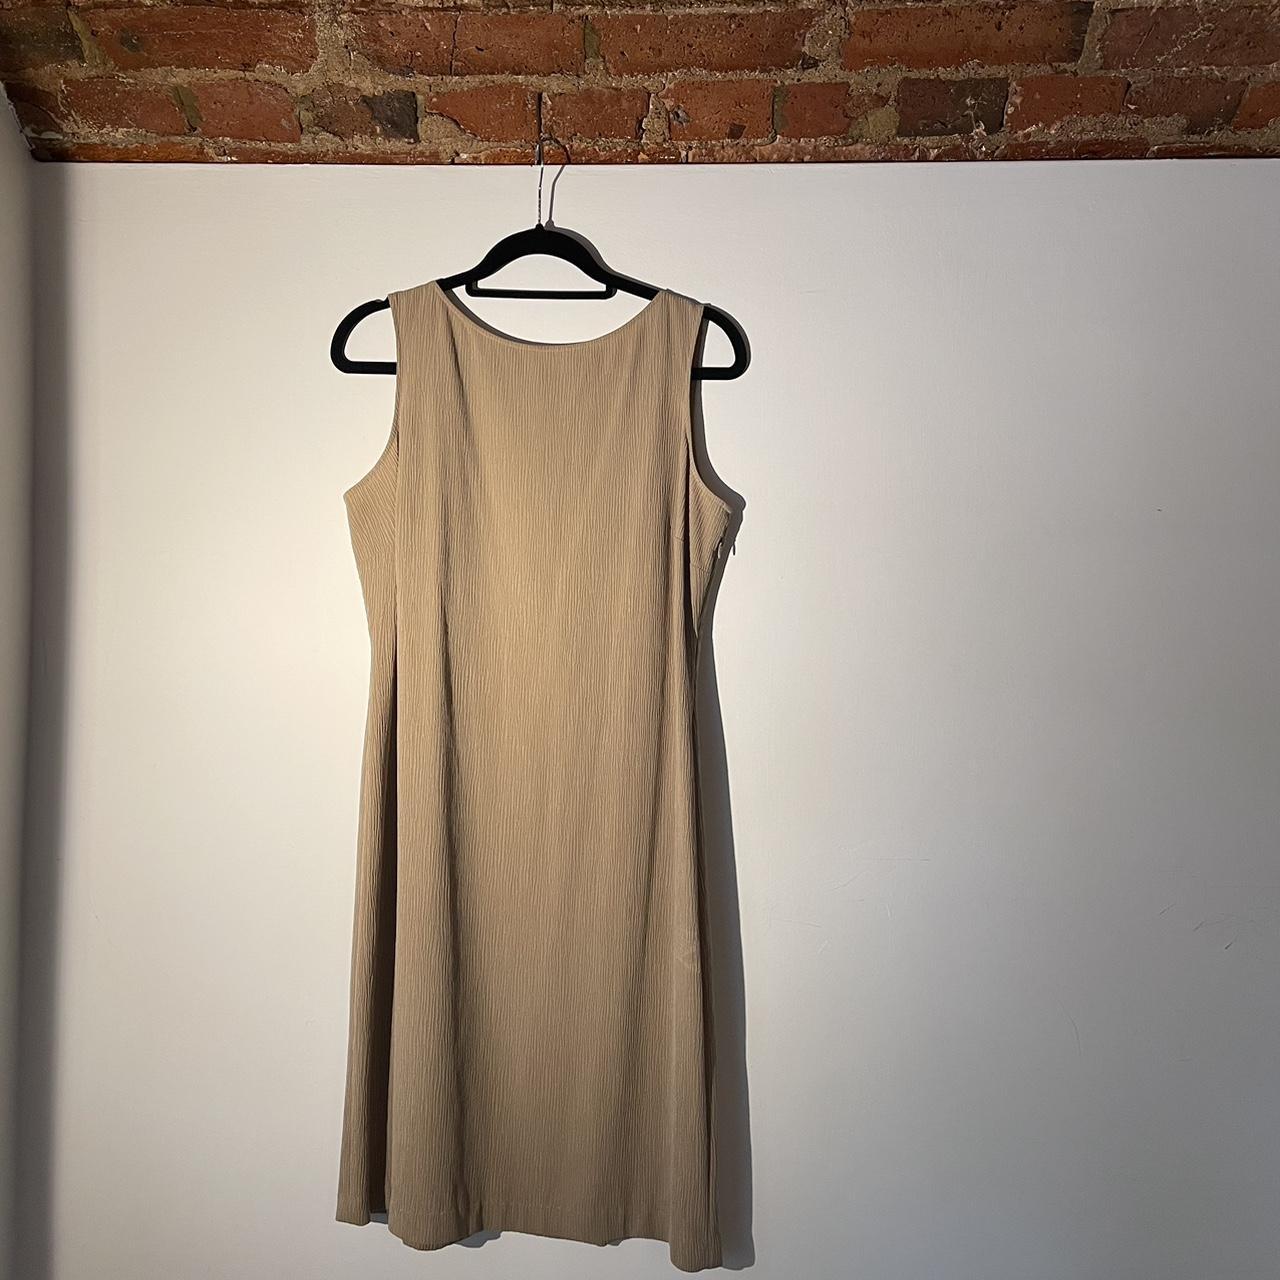 vintage beige crepe dress ☀️⛱️ Perfect for summer... - Depop